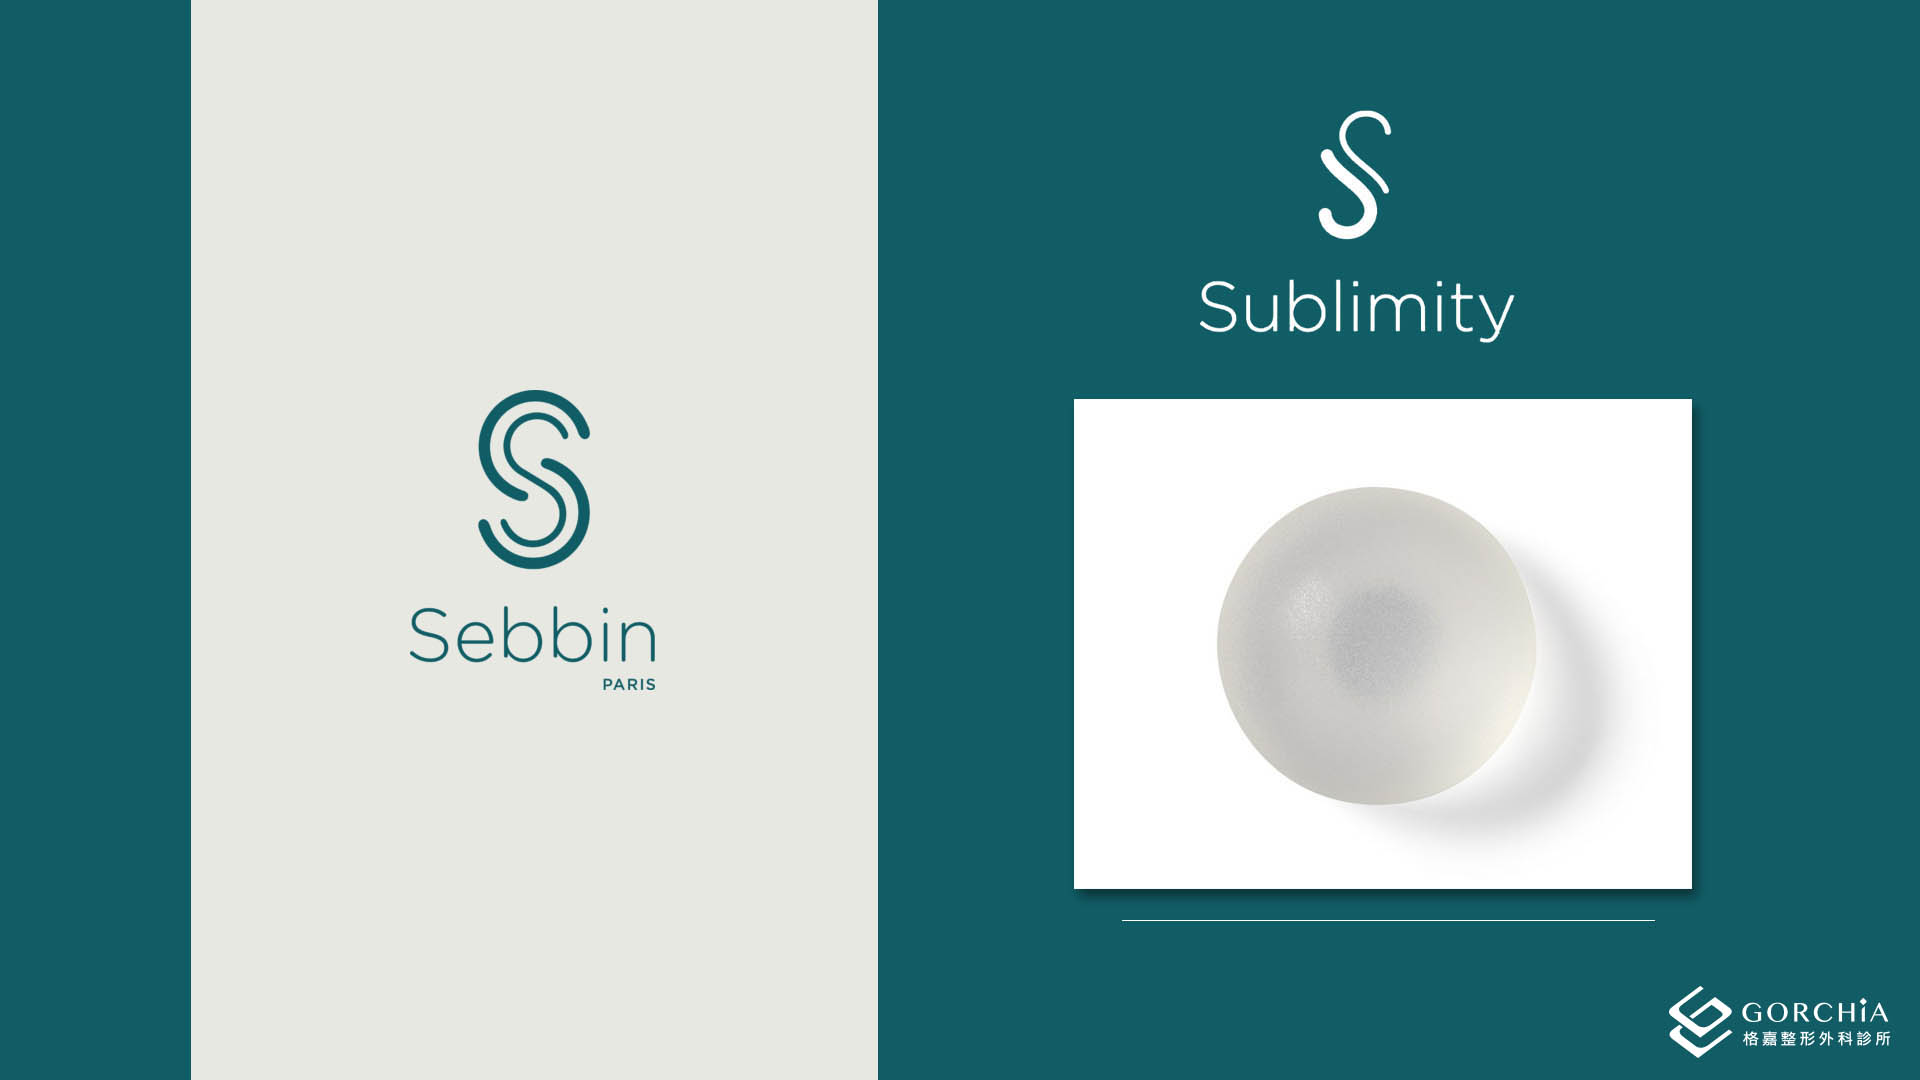 香榭柔滴Sublimity：柔軟的觸感-天然矽膠和奈米外層技術